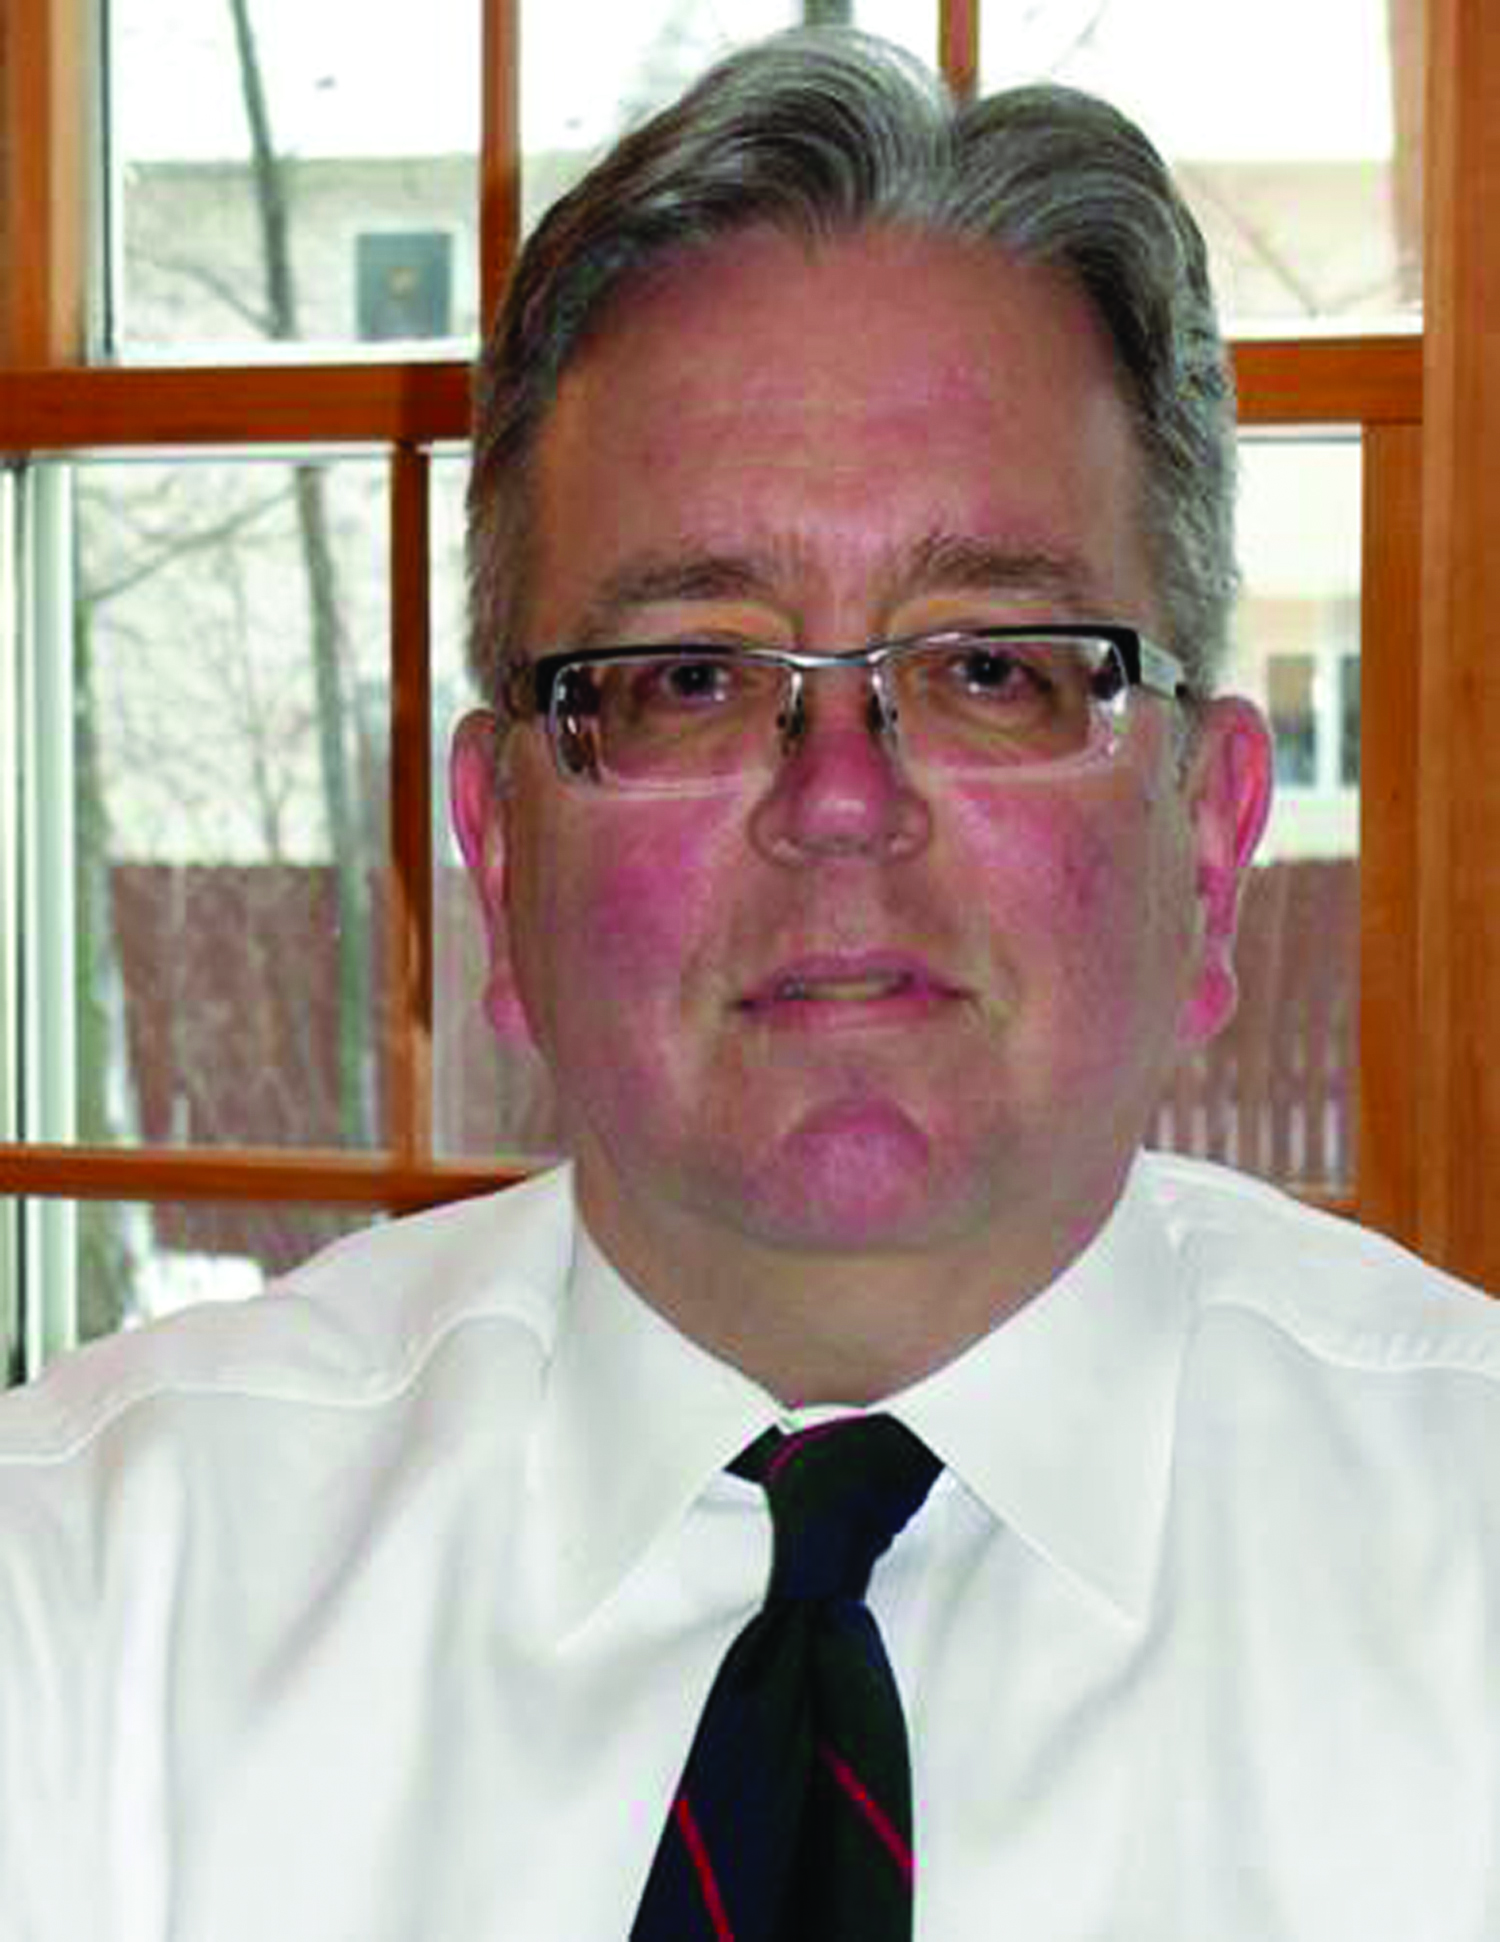 Former Erie County Deputy DA Mark Sacha